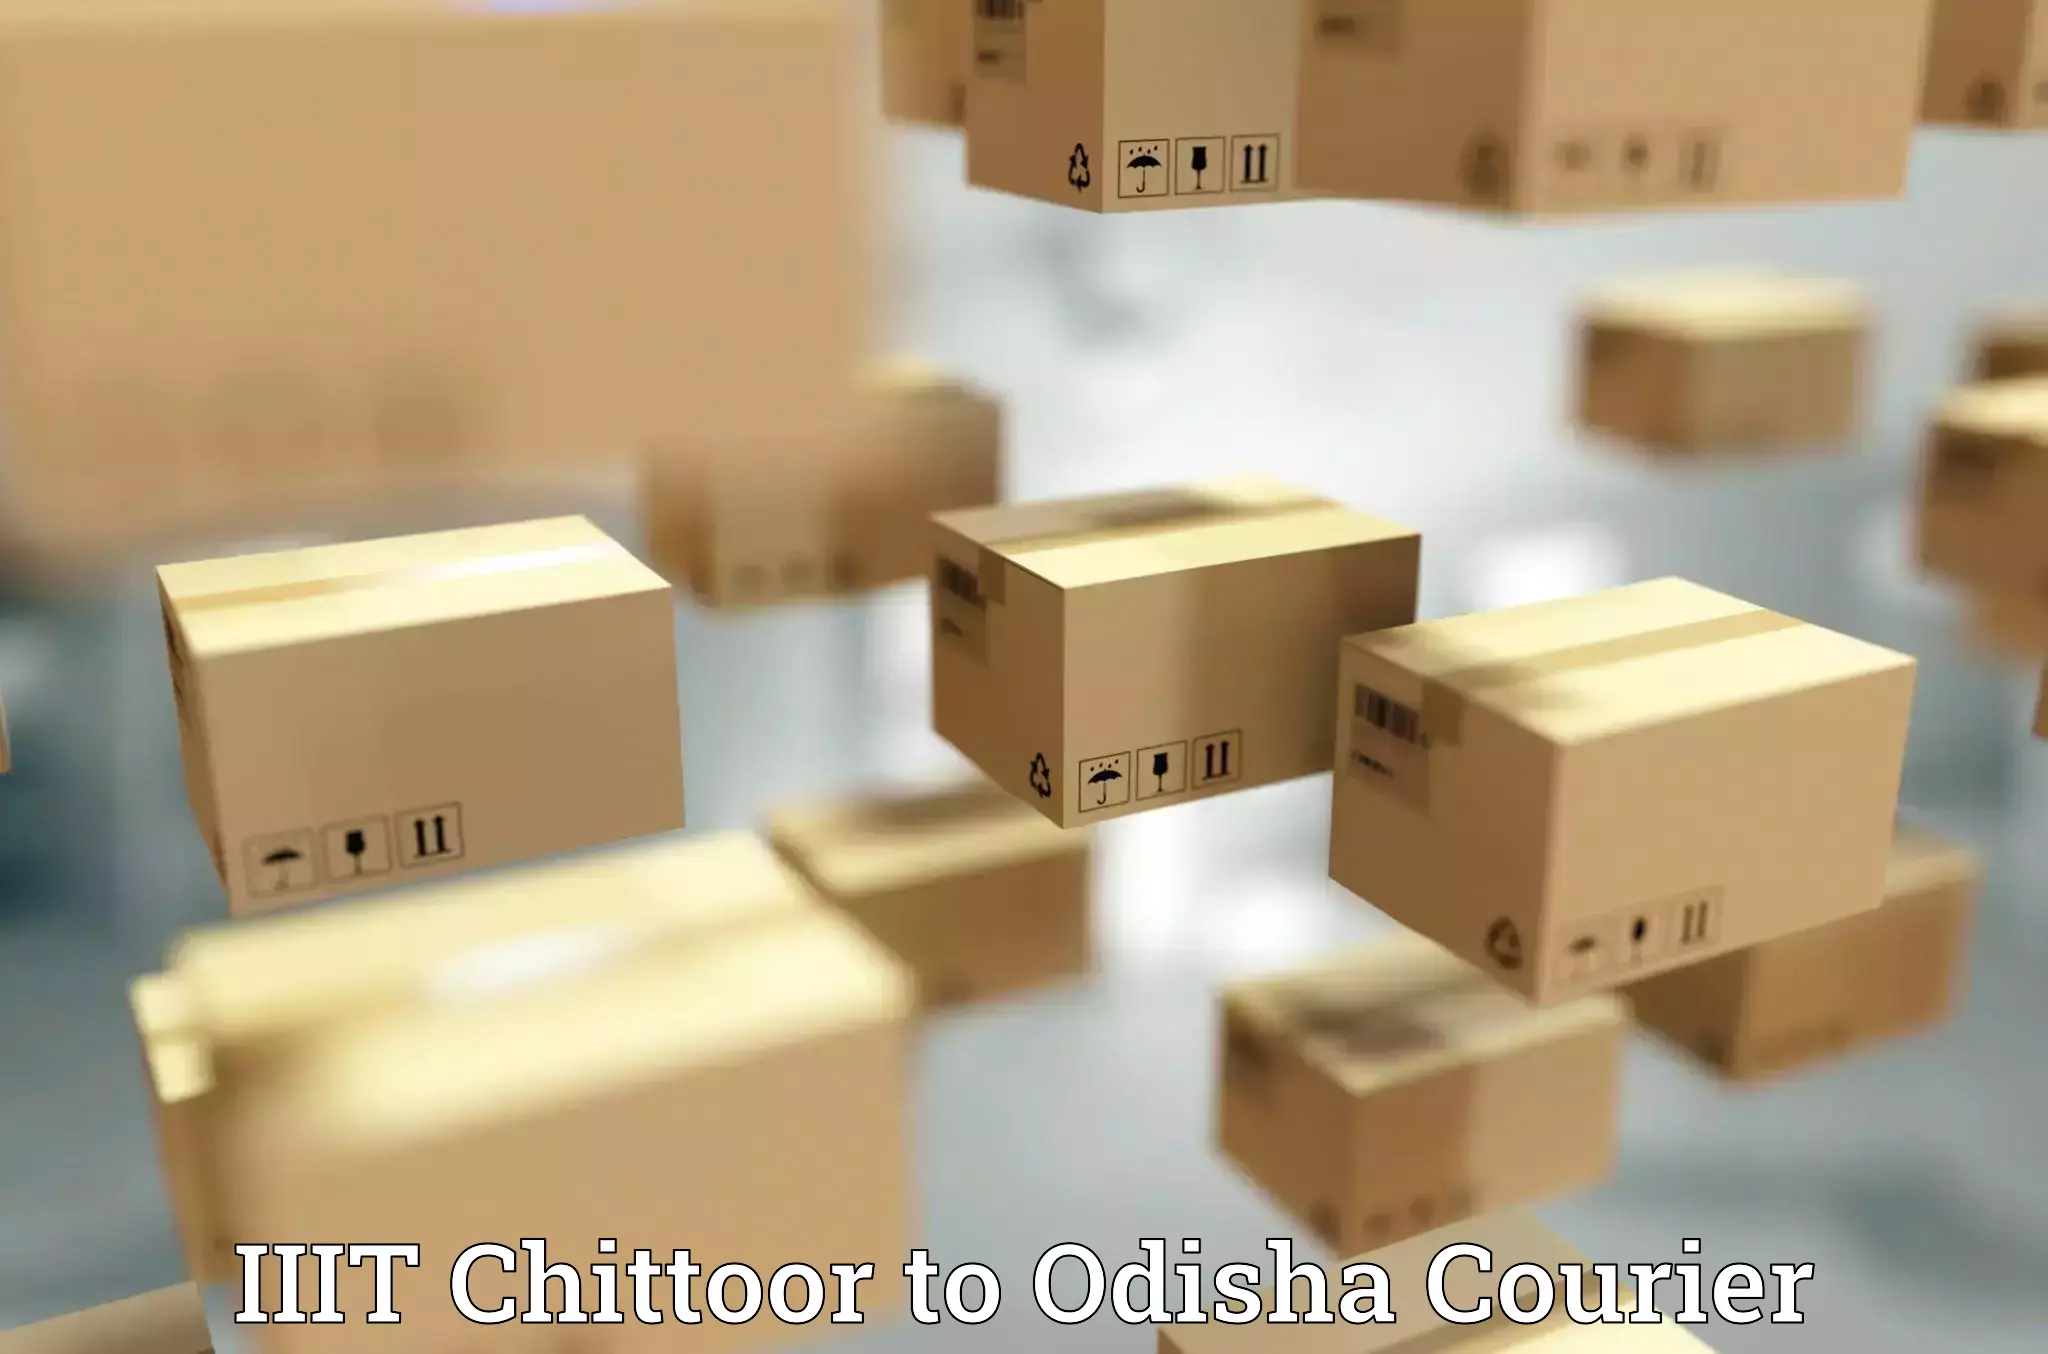 Courier service efficiency IIIT Chittoor to Chandinchowk